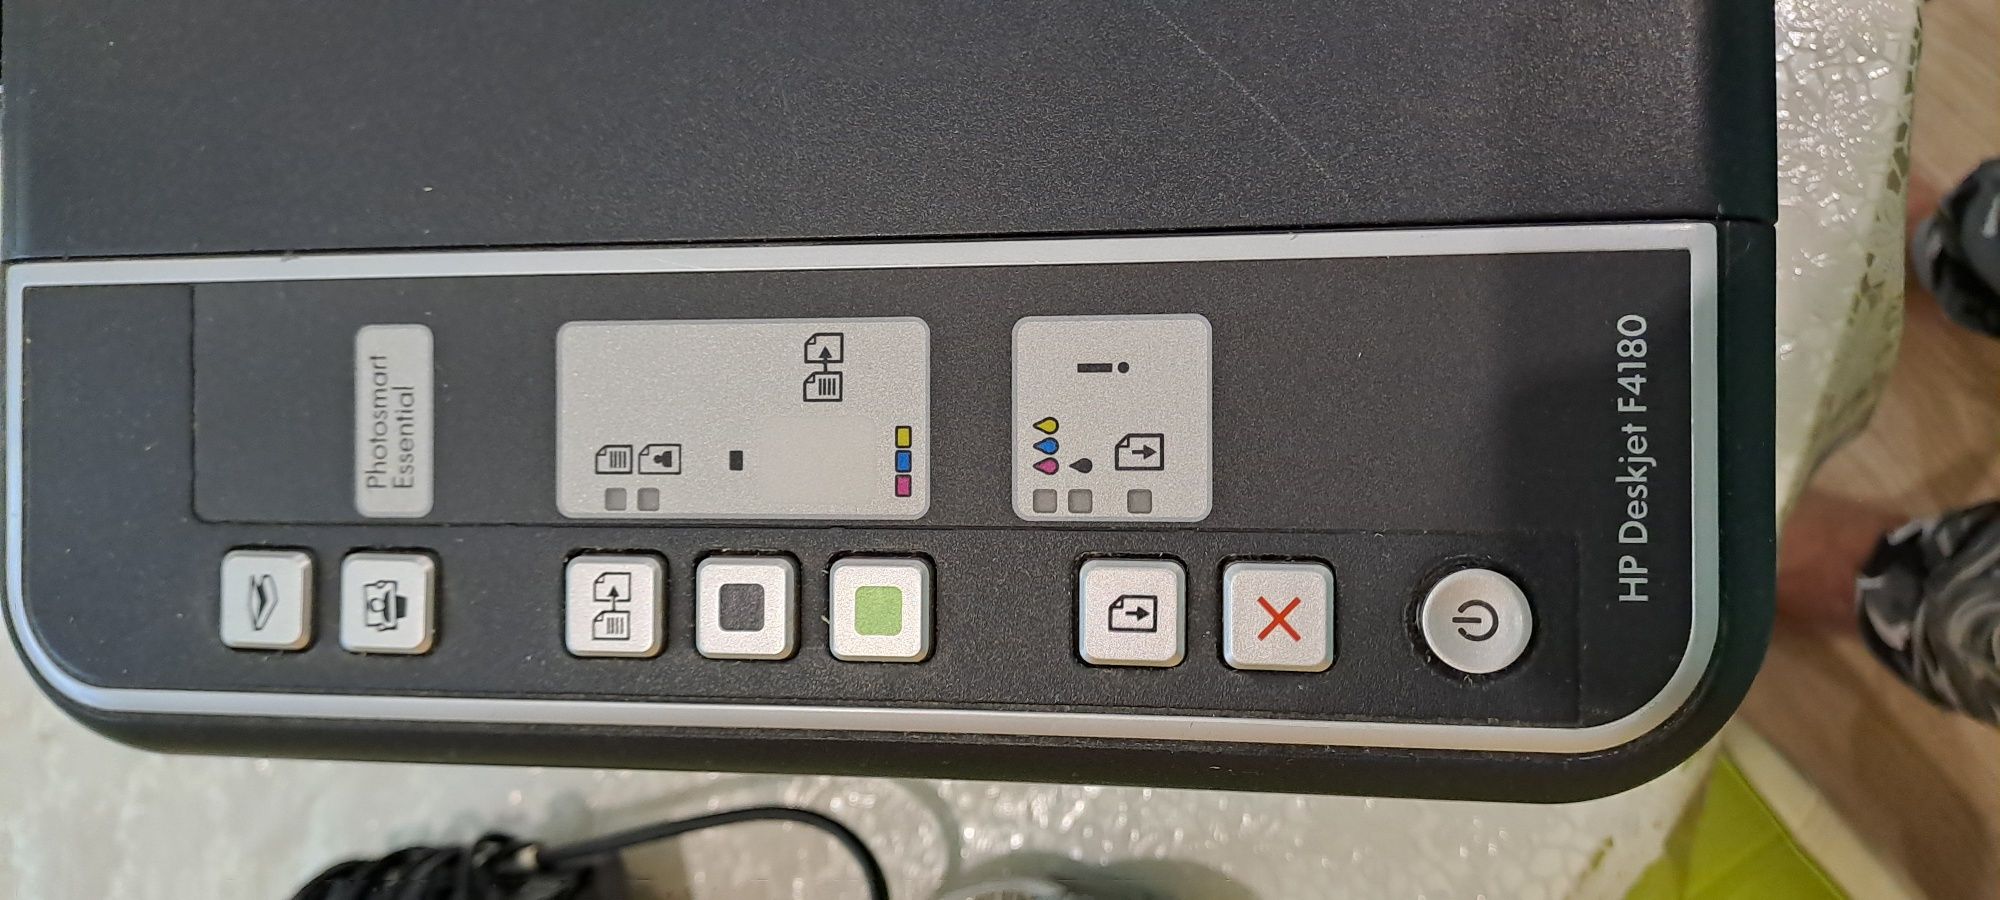 Многофункциональное печатное устройство HP Deskjet F4180